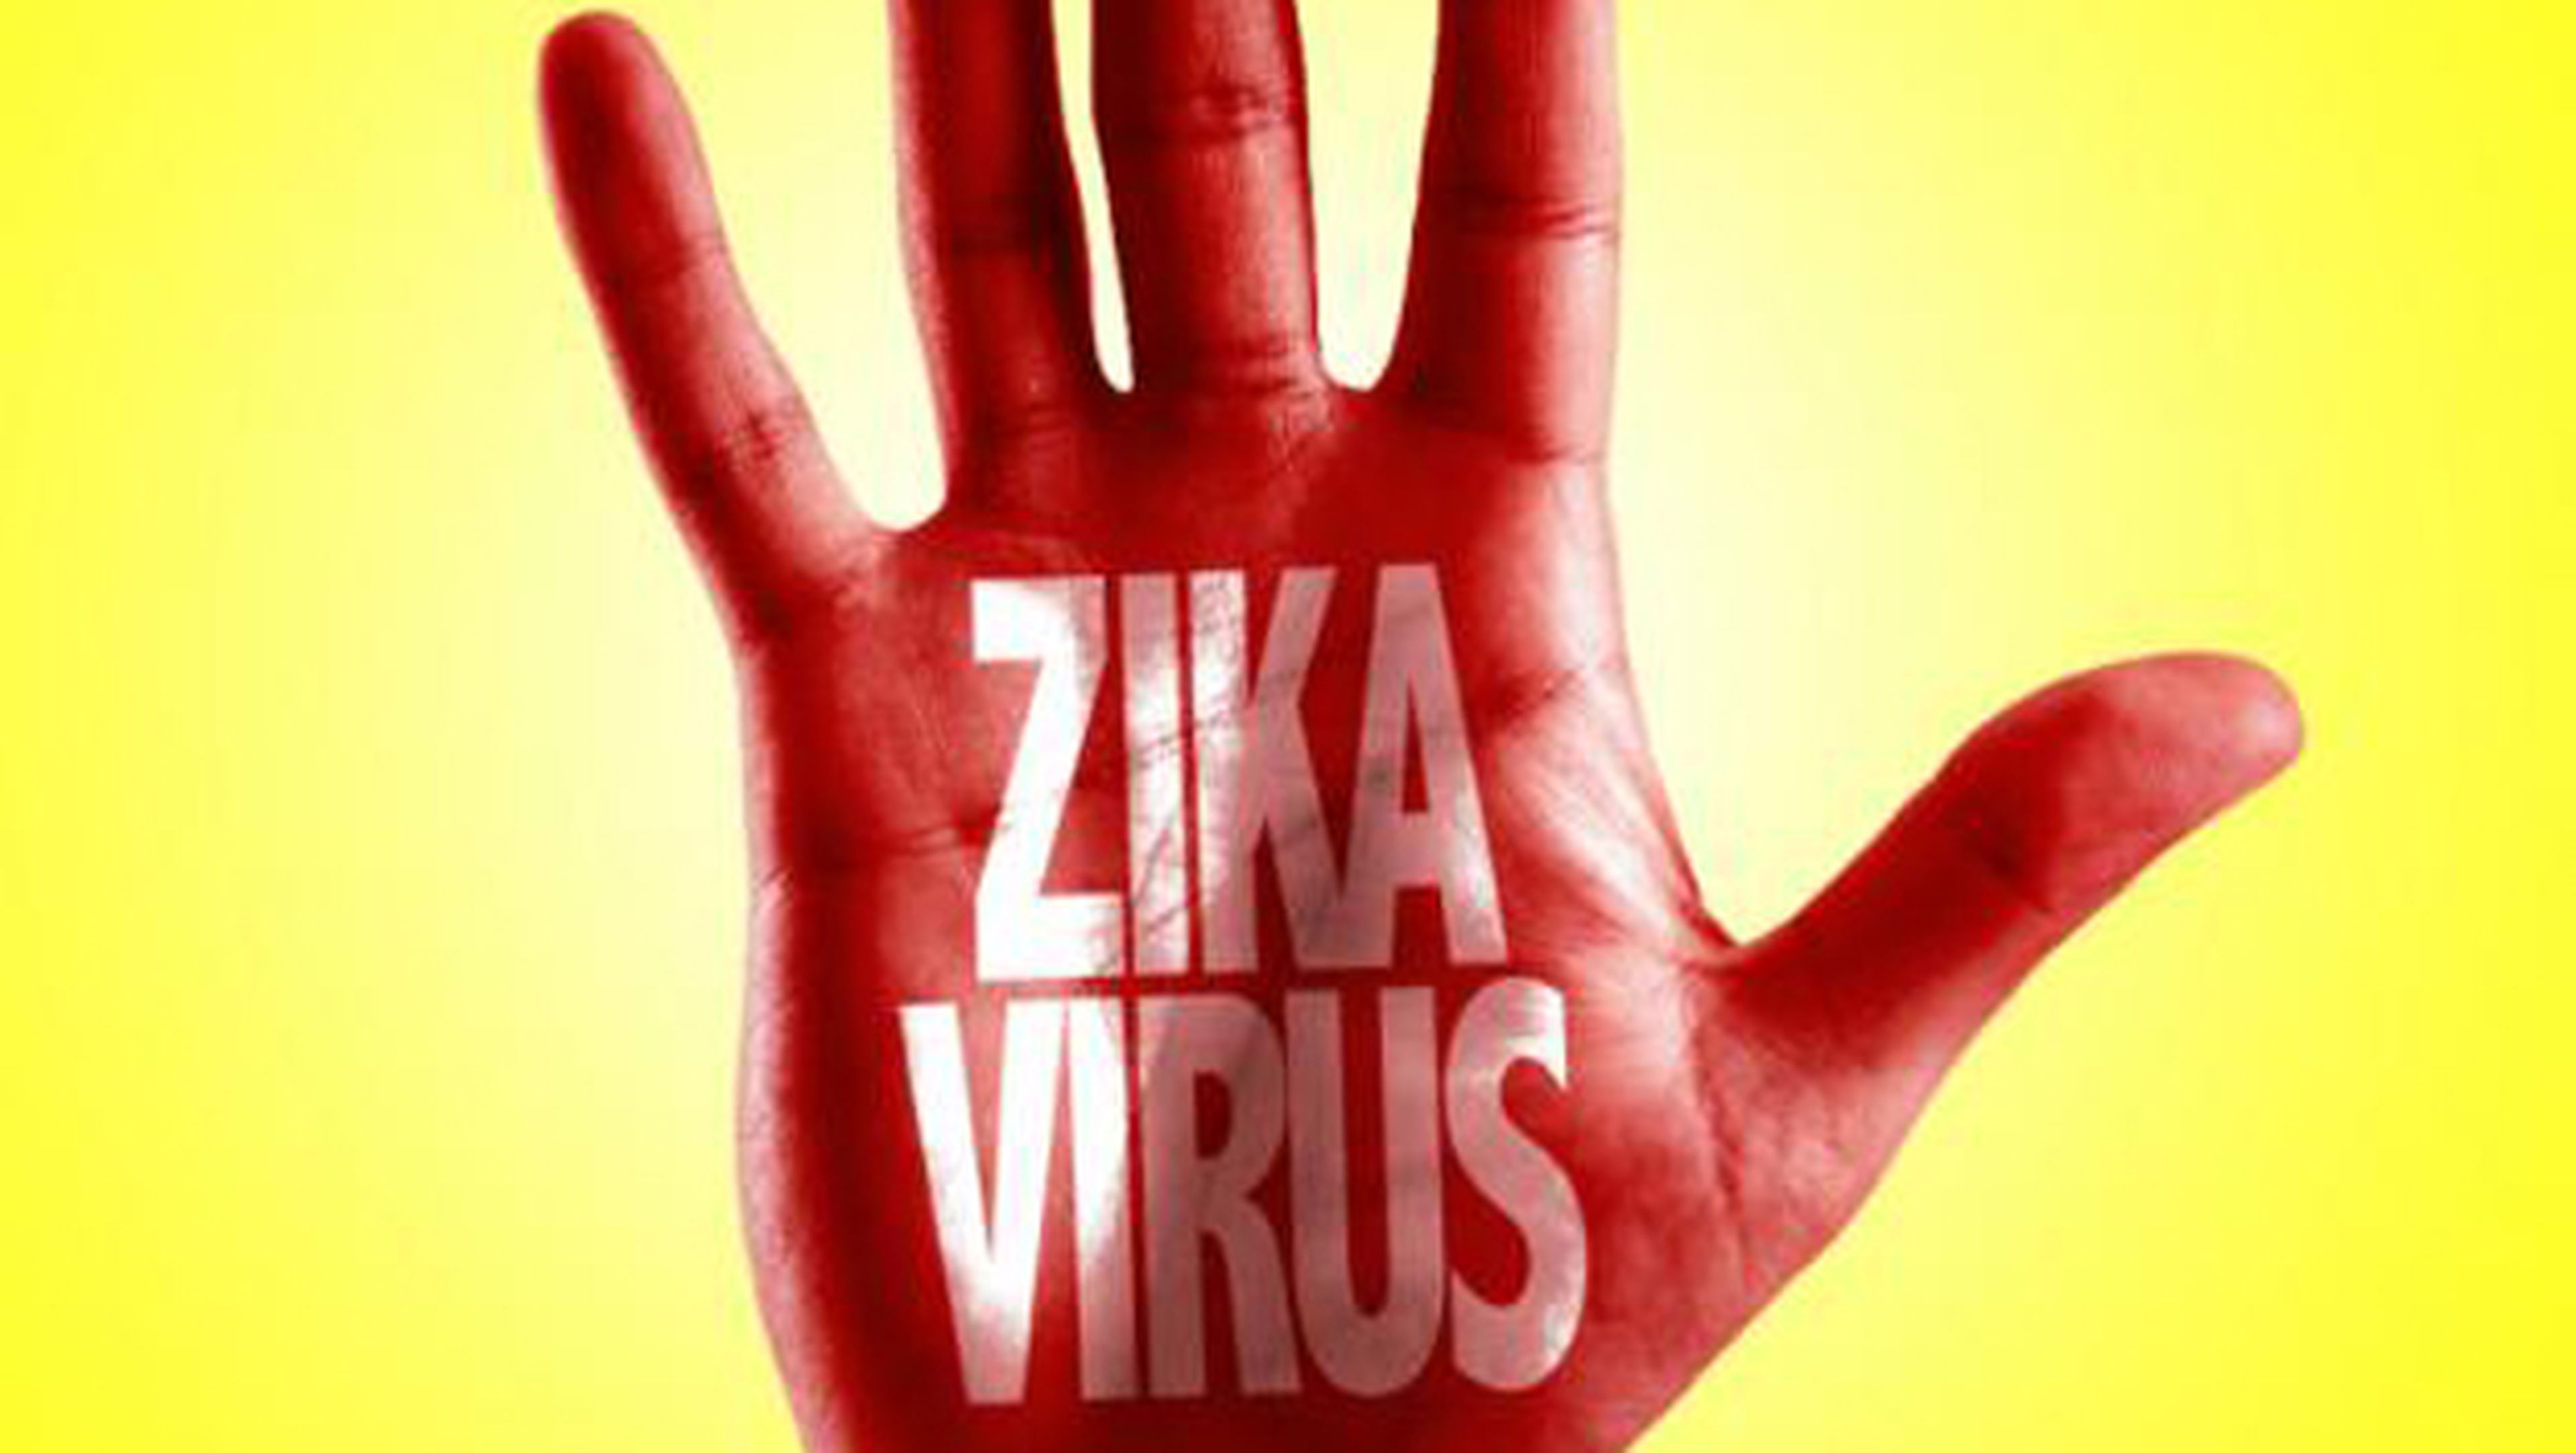 Engaños sobre el virus ZIKA